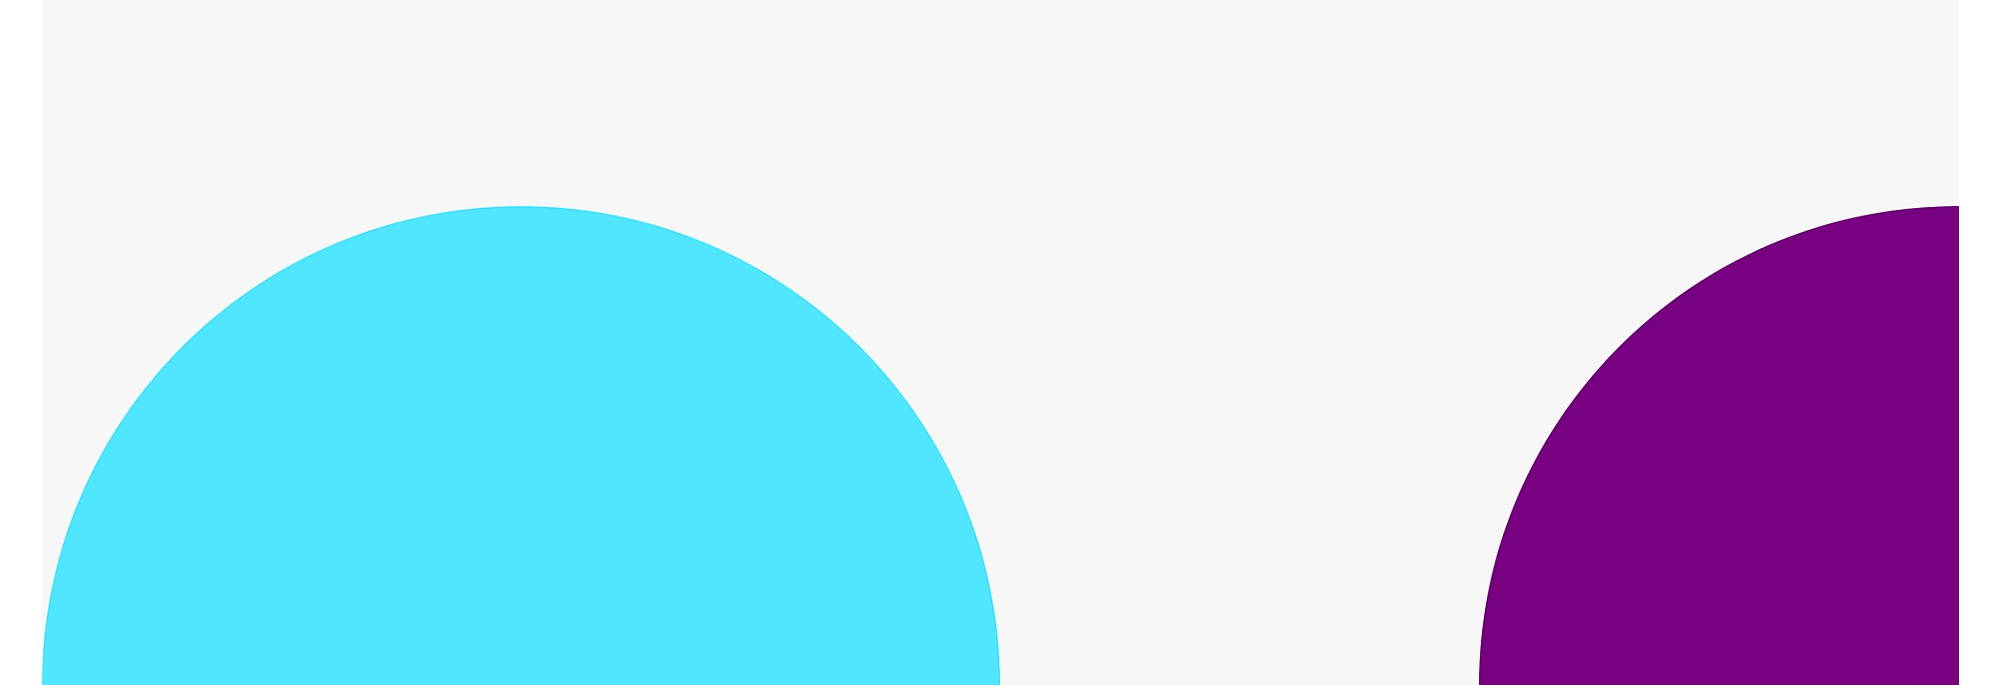 Twee grote, gedeeltelijk overlappende cirkels met links een blauwe cirkel en rechts een paarse cirkel 